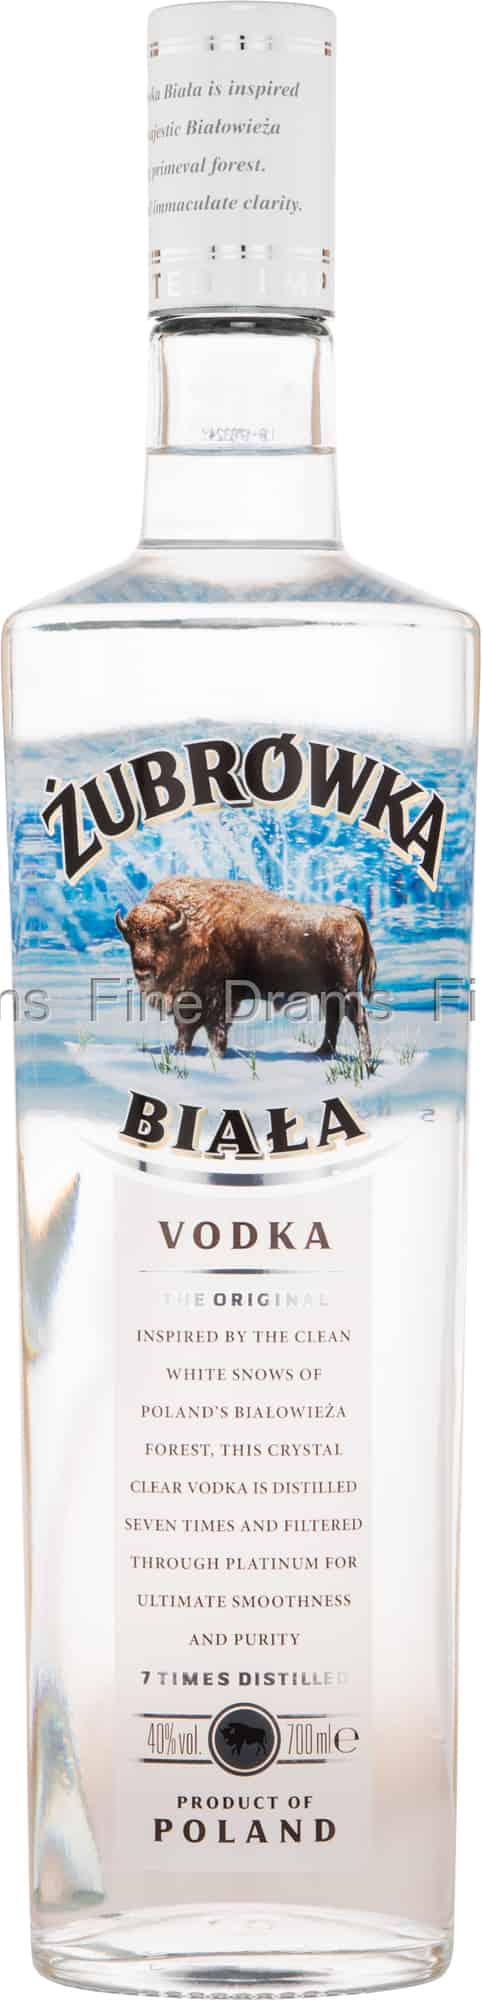 Zubrówka Vodka Biala